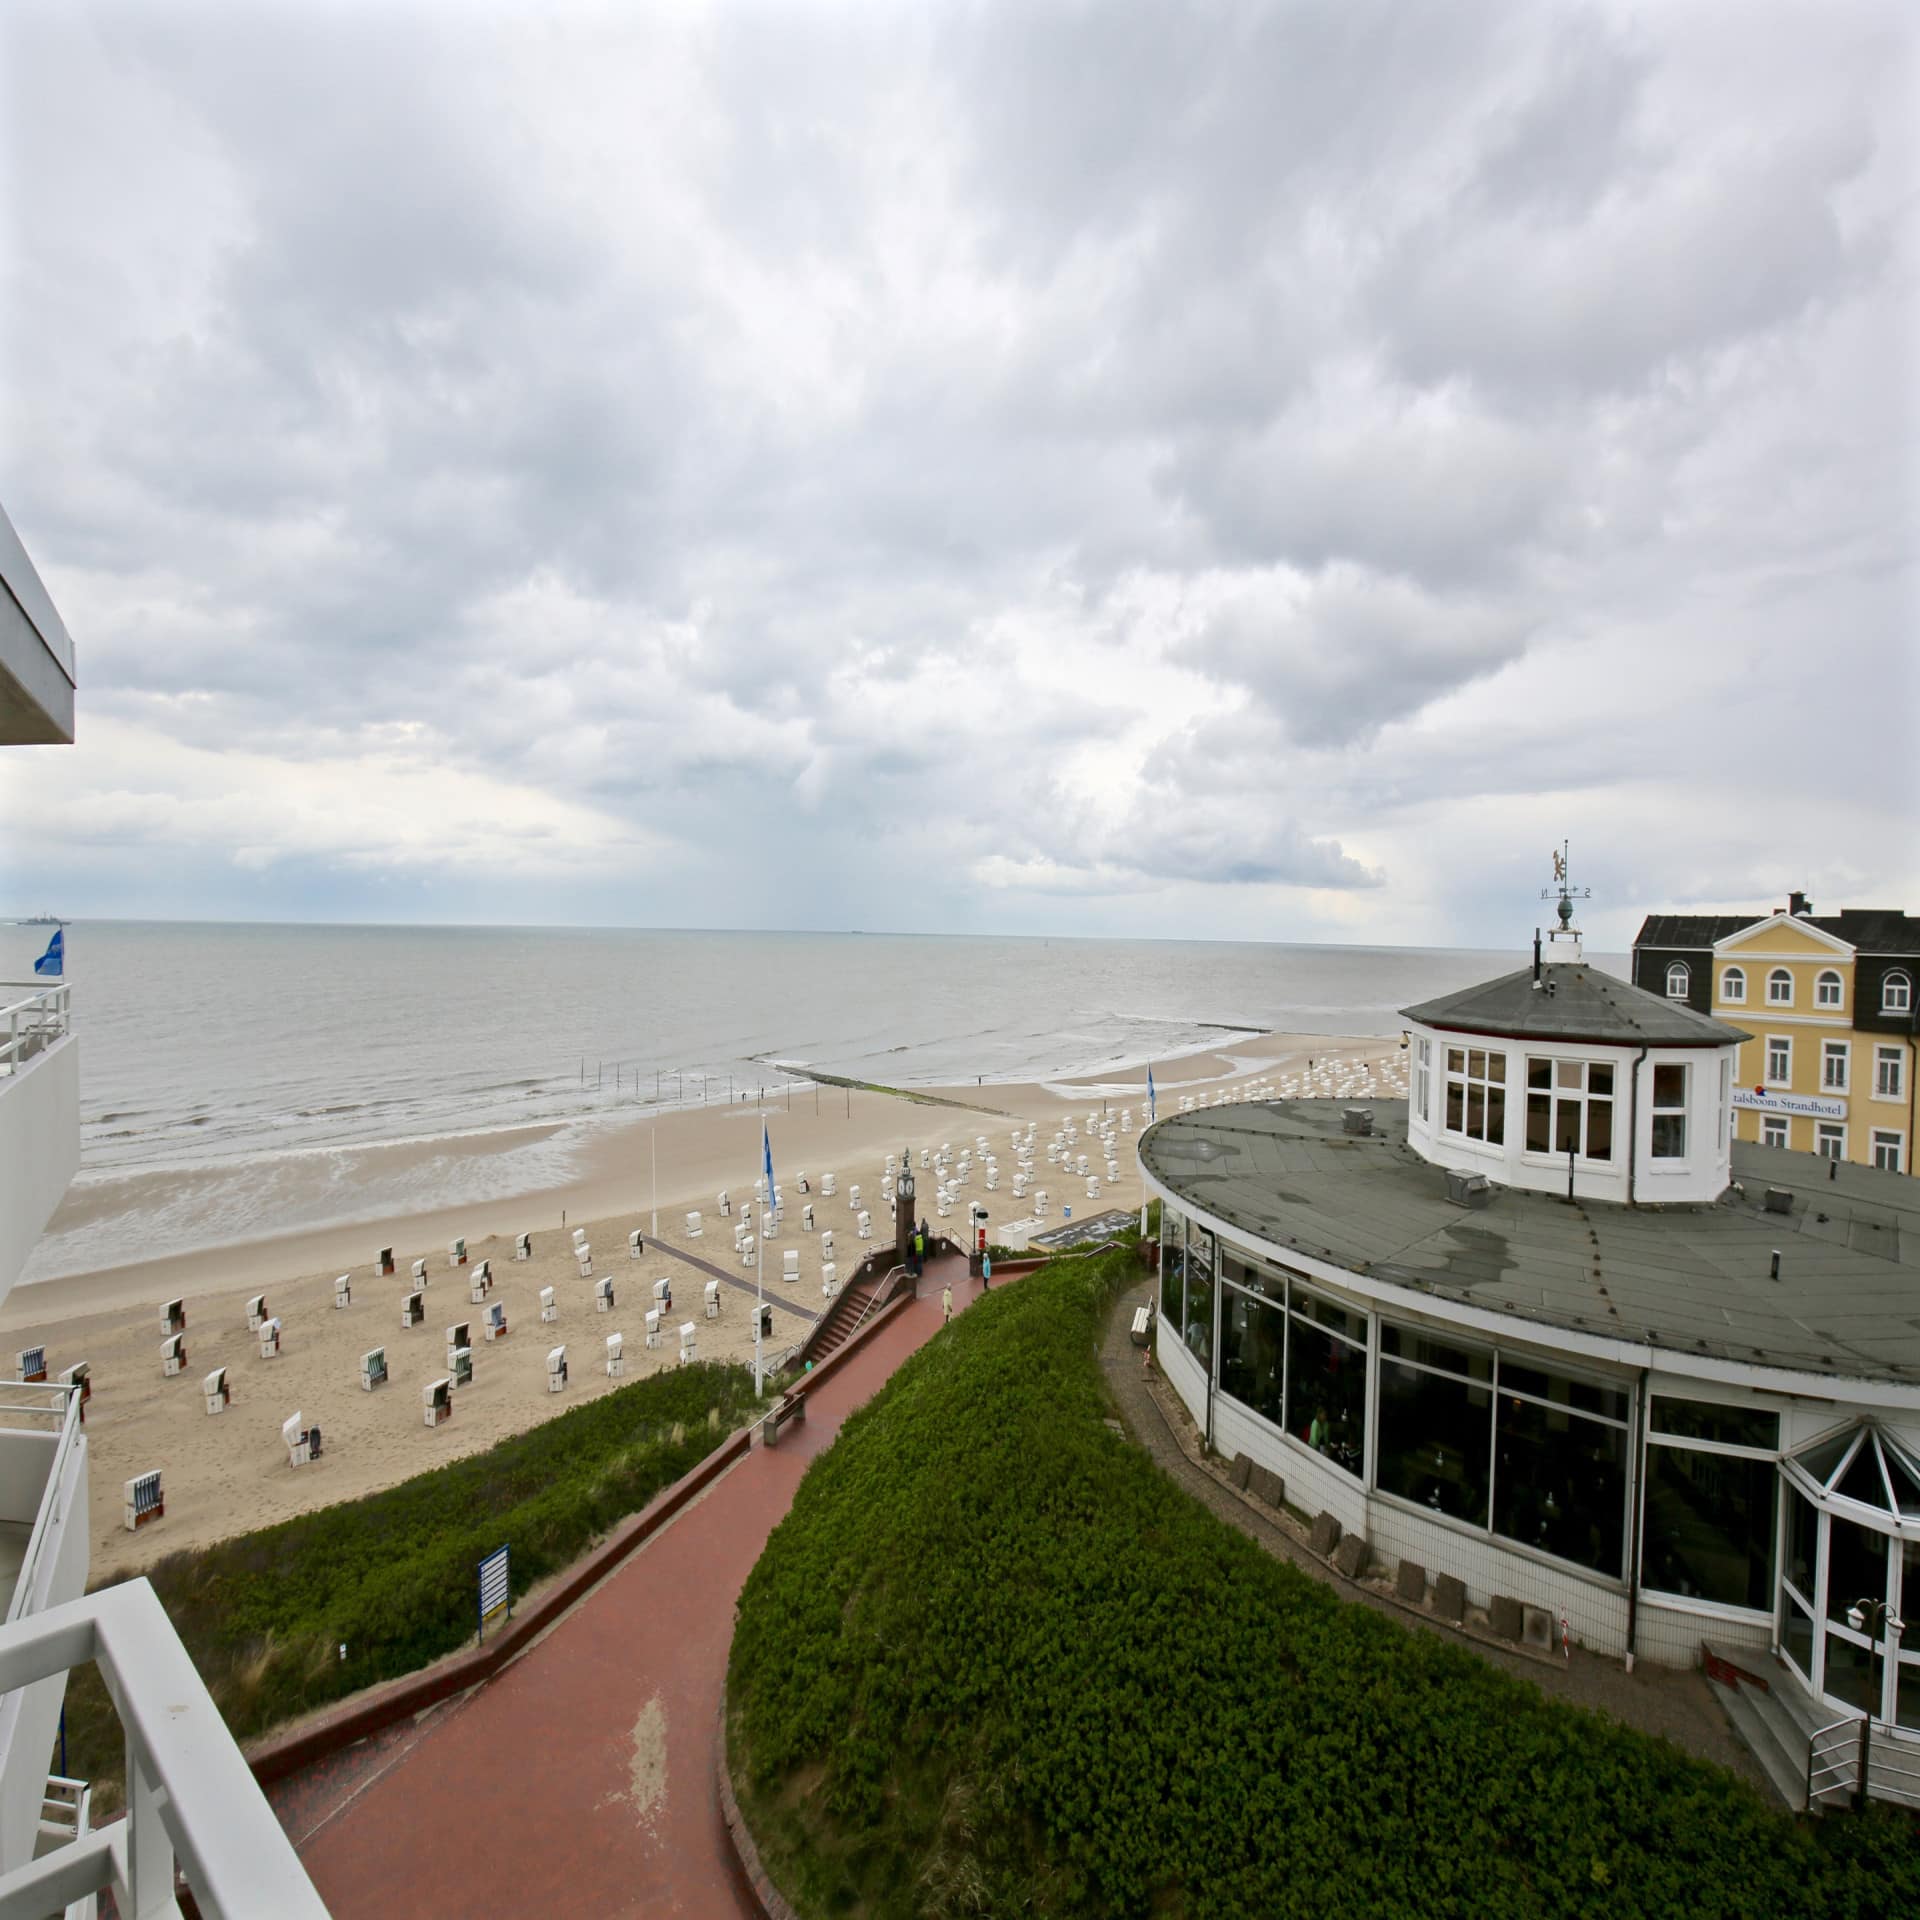 Blick vom Balkon auf den Strand und Gebäude von Wangerooge.